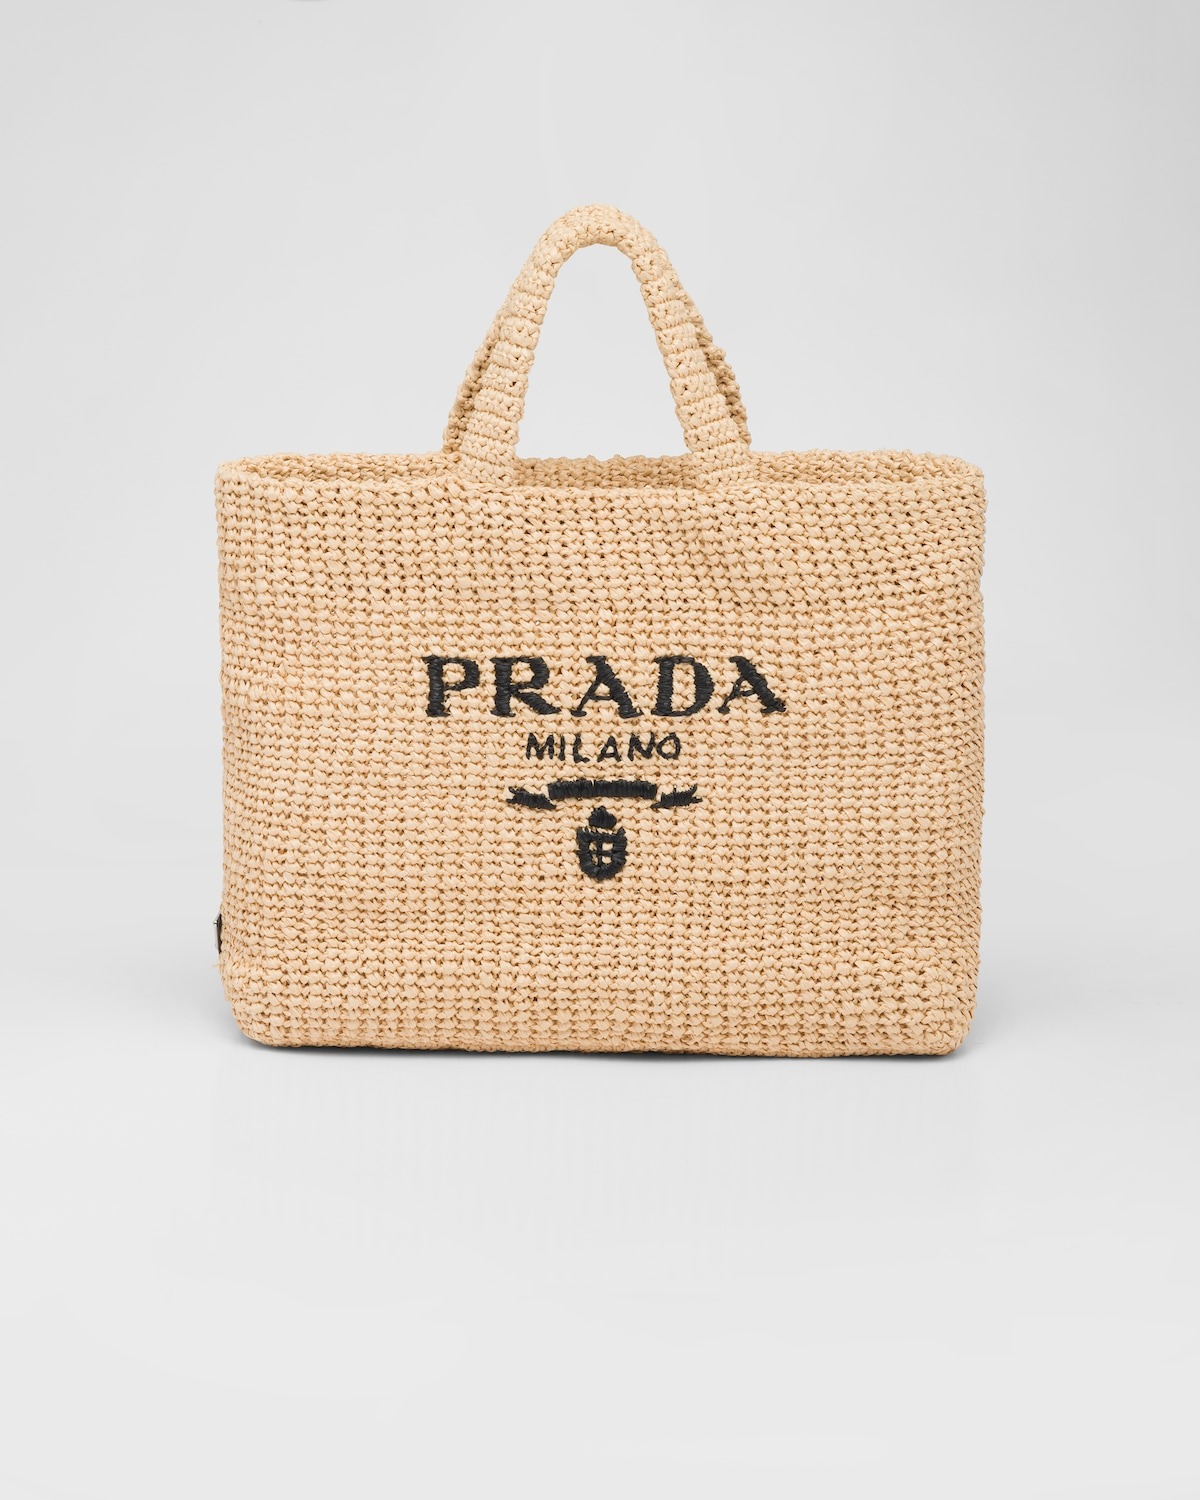 Gigi Hadid Carries The Prada Etiquette Bag